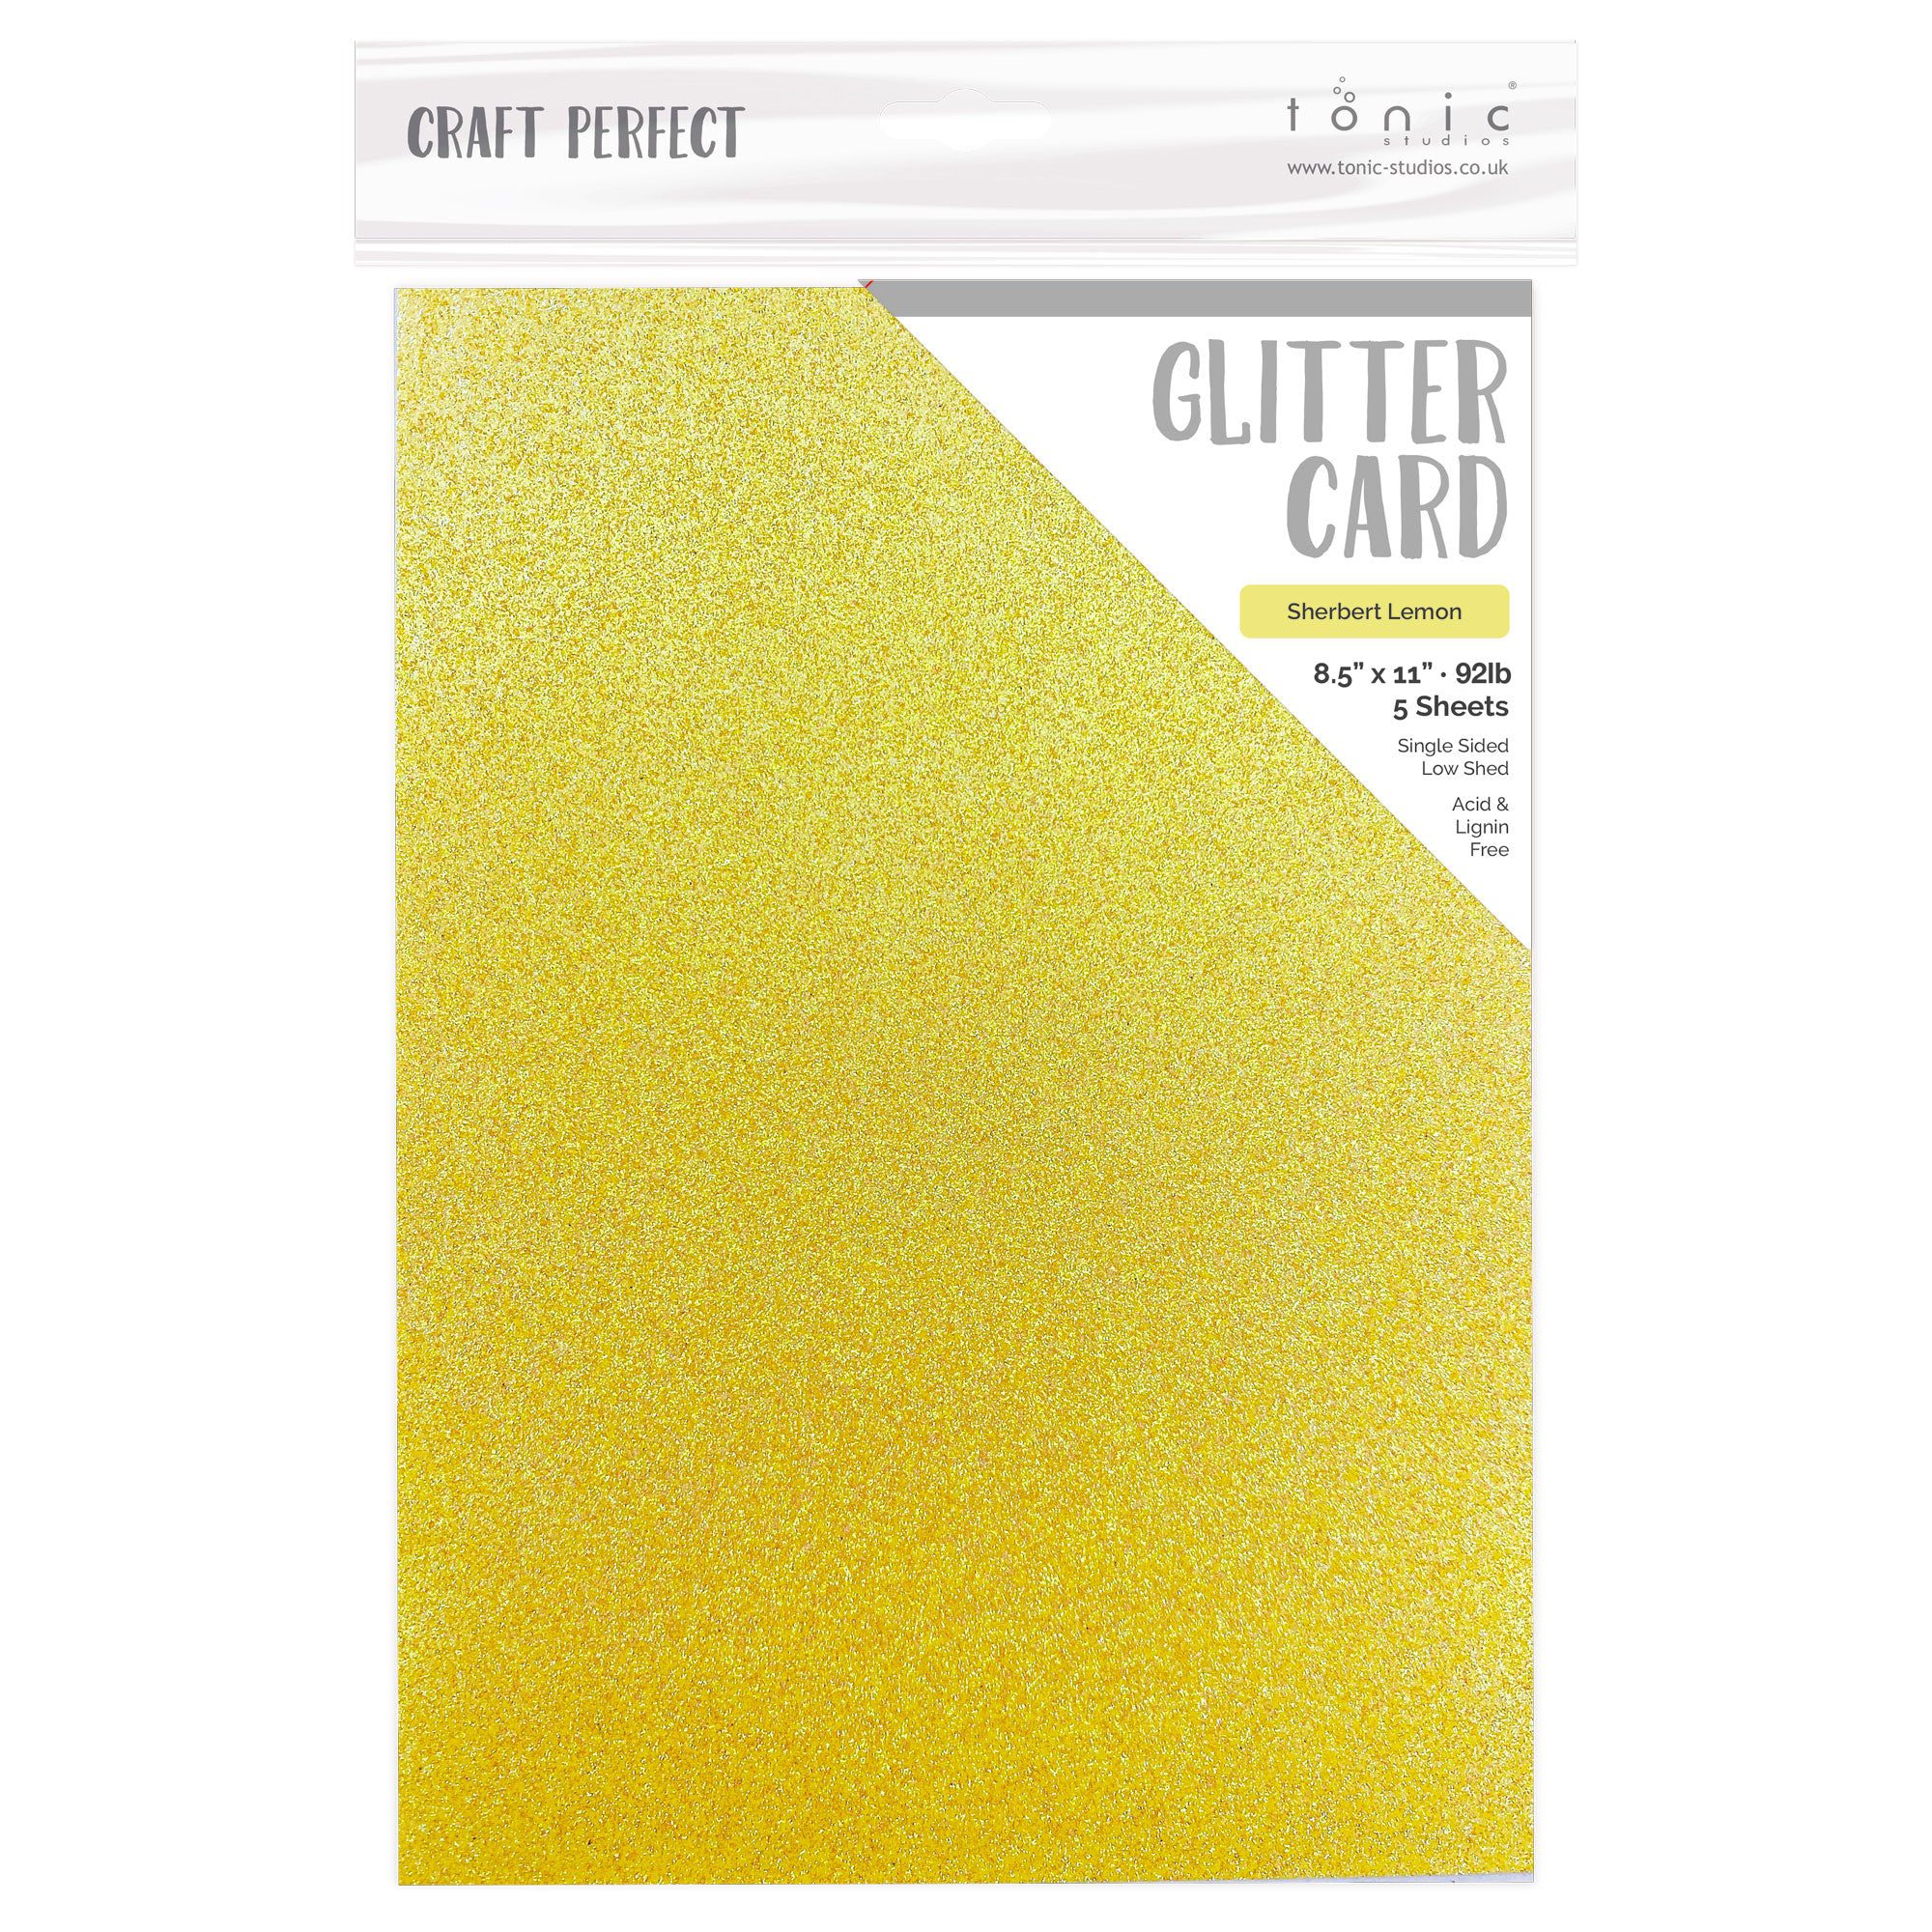 Glitter Spritz & Tonic Set by Craft Circus - Jetzt bestellen